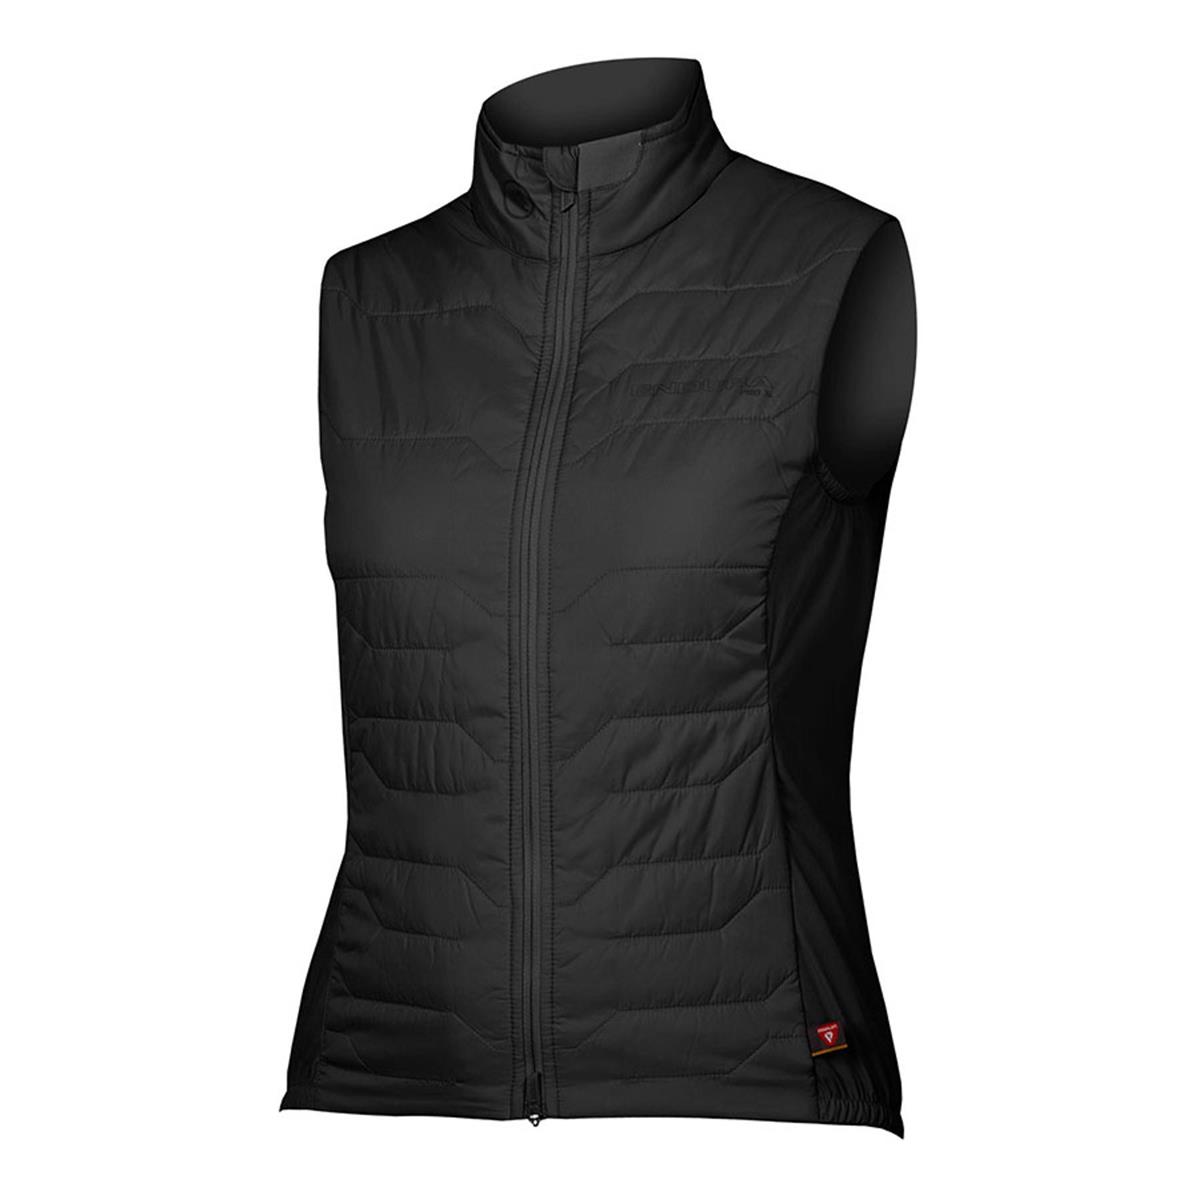 Pro SL PrimaLoft Rain/Windproof Vest Women's Vest Black size XS